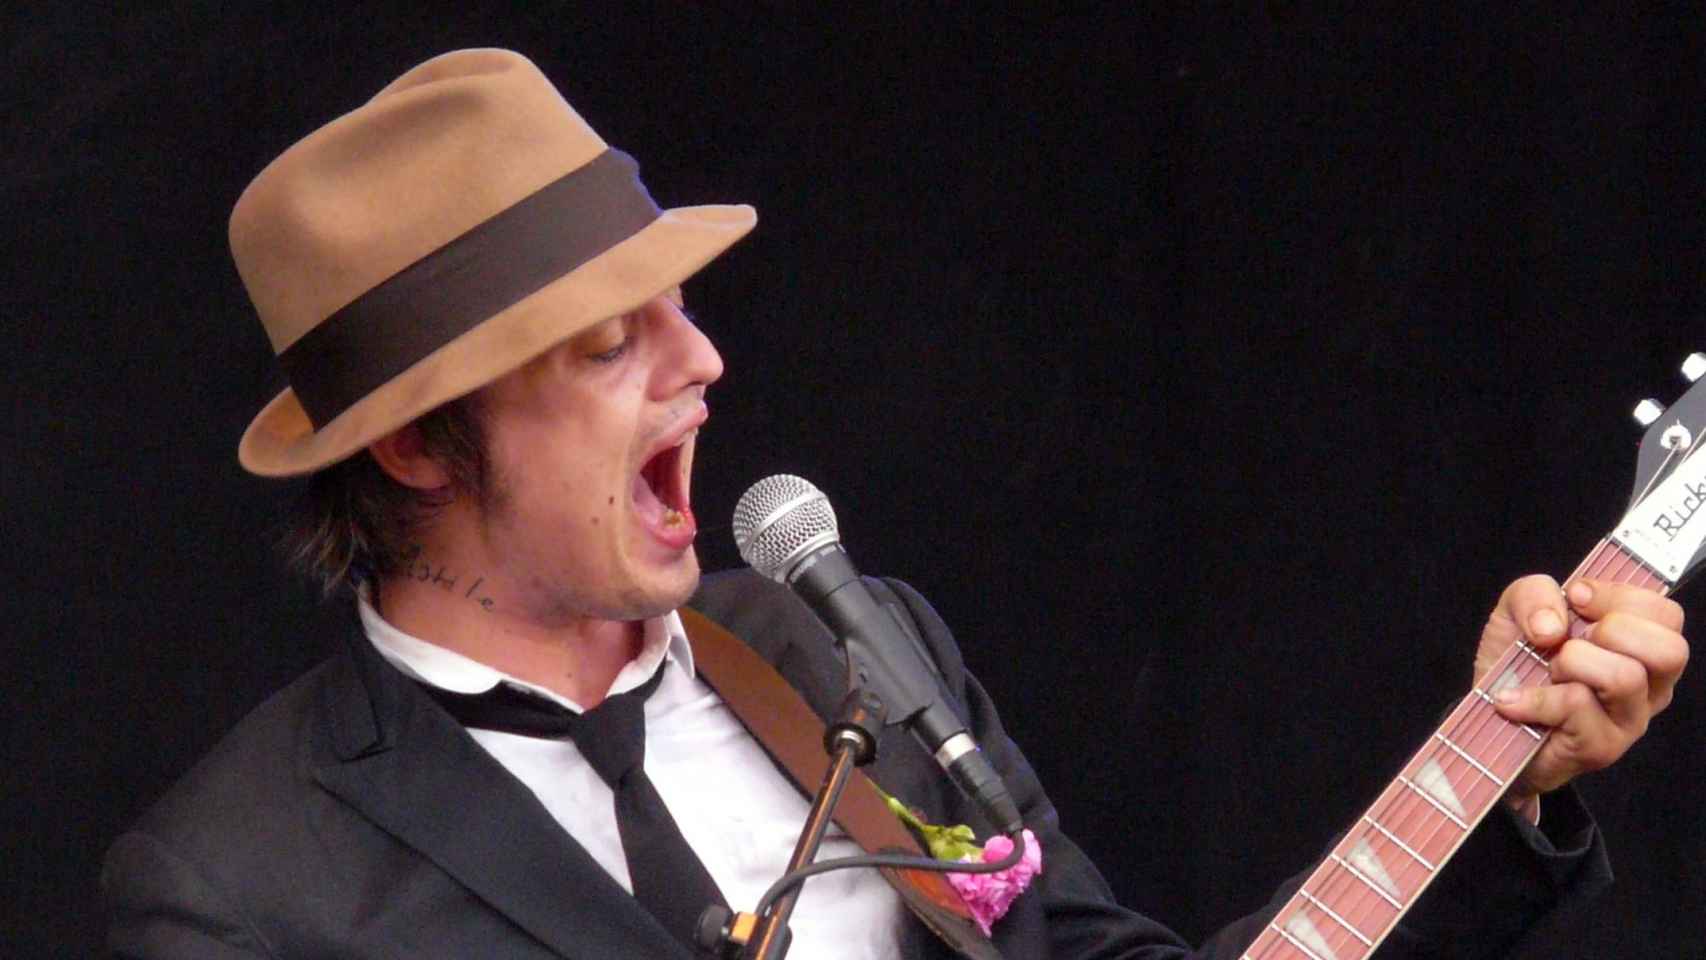 Peter Doherty durante un concierto en 2007. Foto: Brocco Lee (CC BY-SA 2.0)